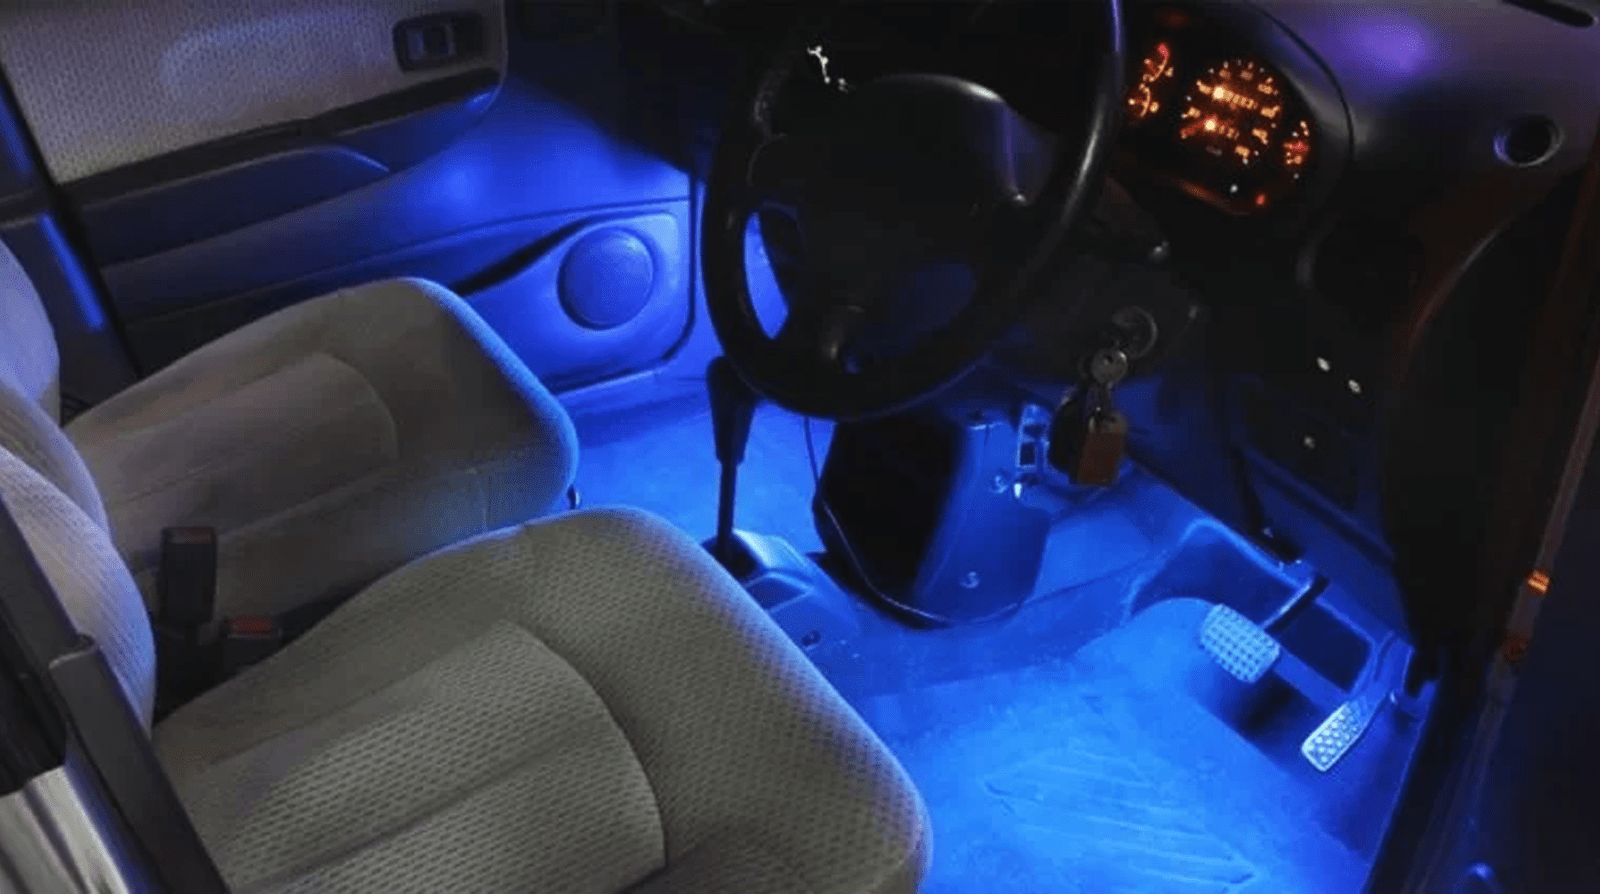 Luces LED interiores: Nueva tendencia para automóviles que pueden